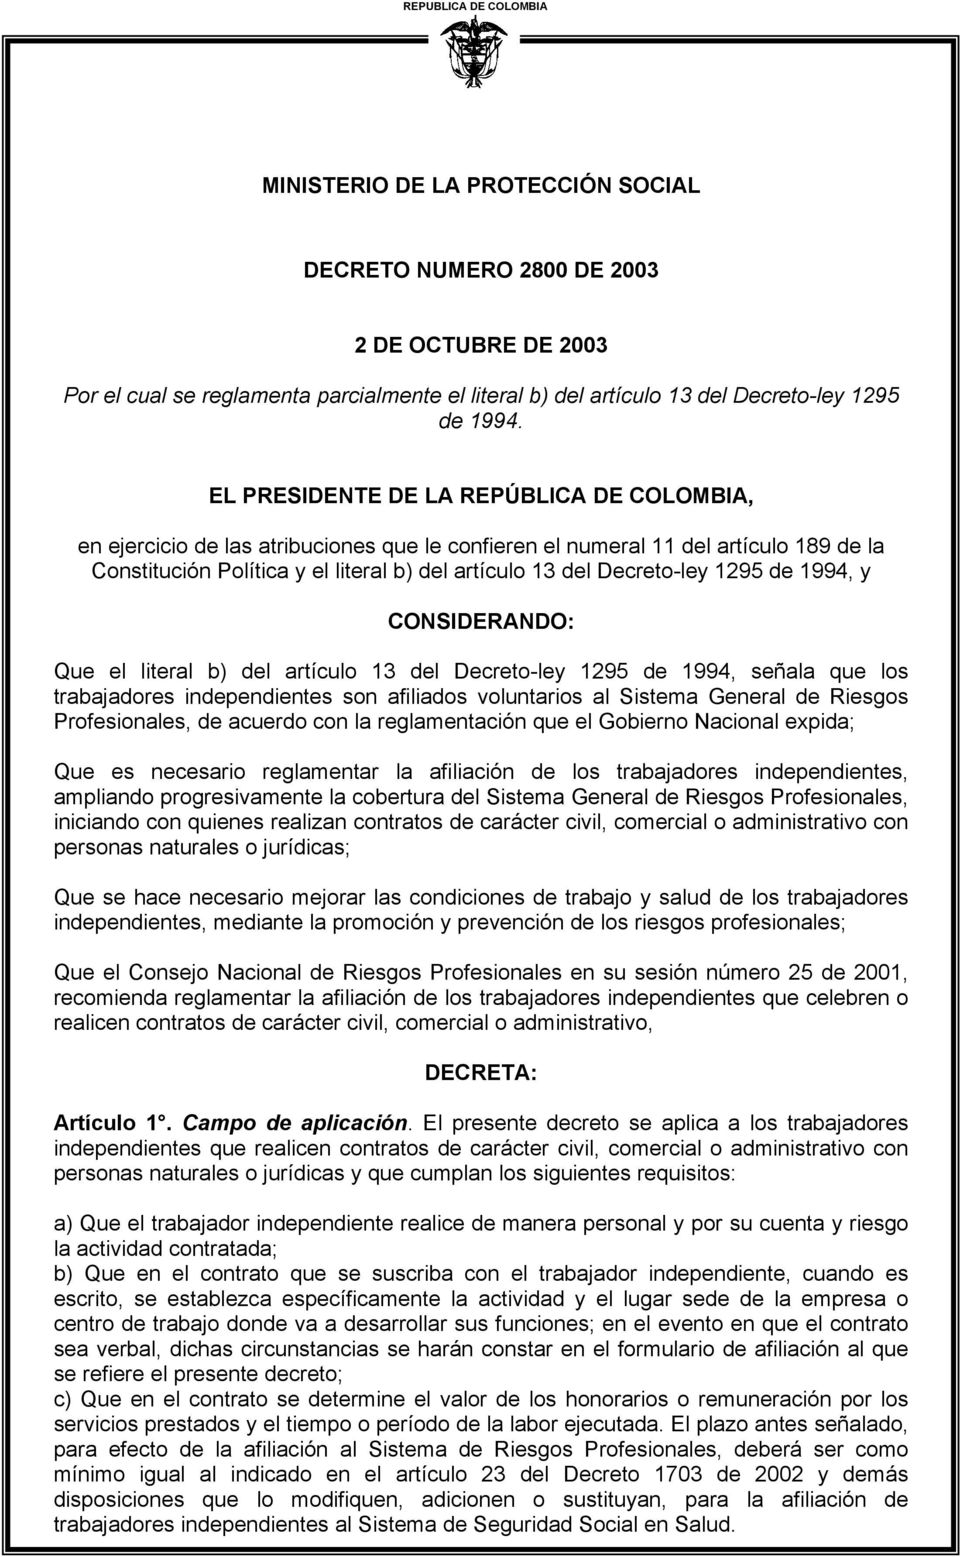 EL PRESIDENTE DE LA REPÚBLICA DE COLOMBIA, en ejercicio de las atribuciones que le confieren el numeral 11 del artículo 189 de la Constitución Política y el literal b) del artículo 13 del Decreto-ley